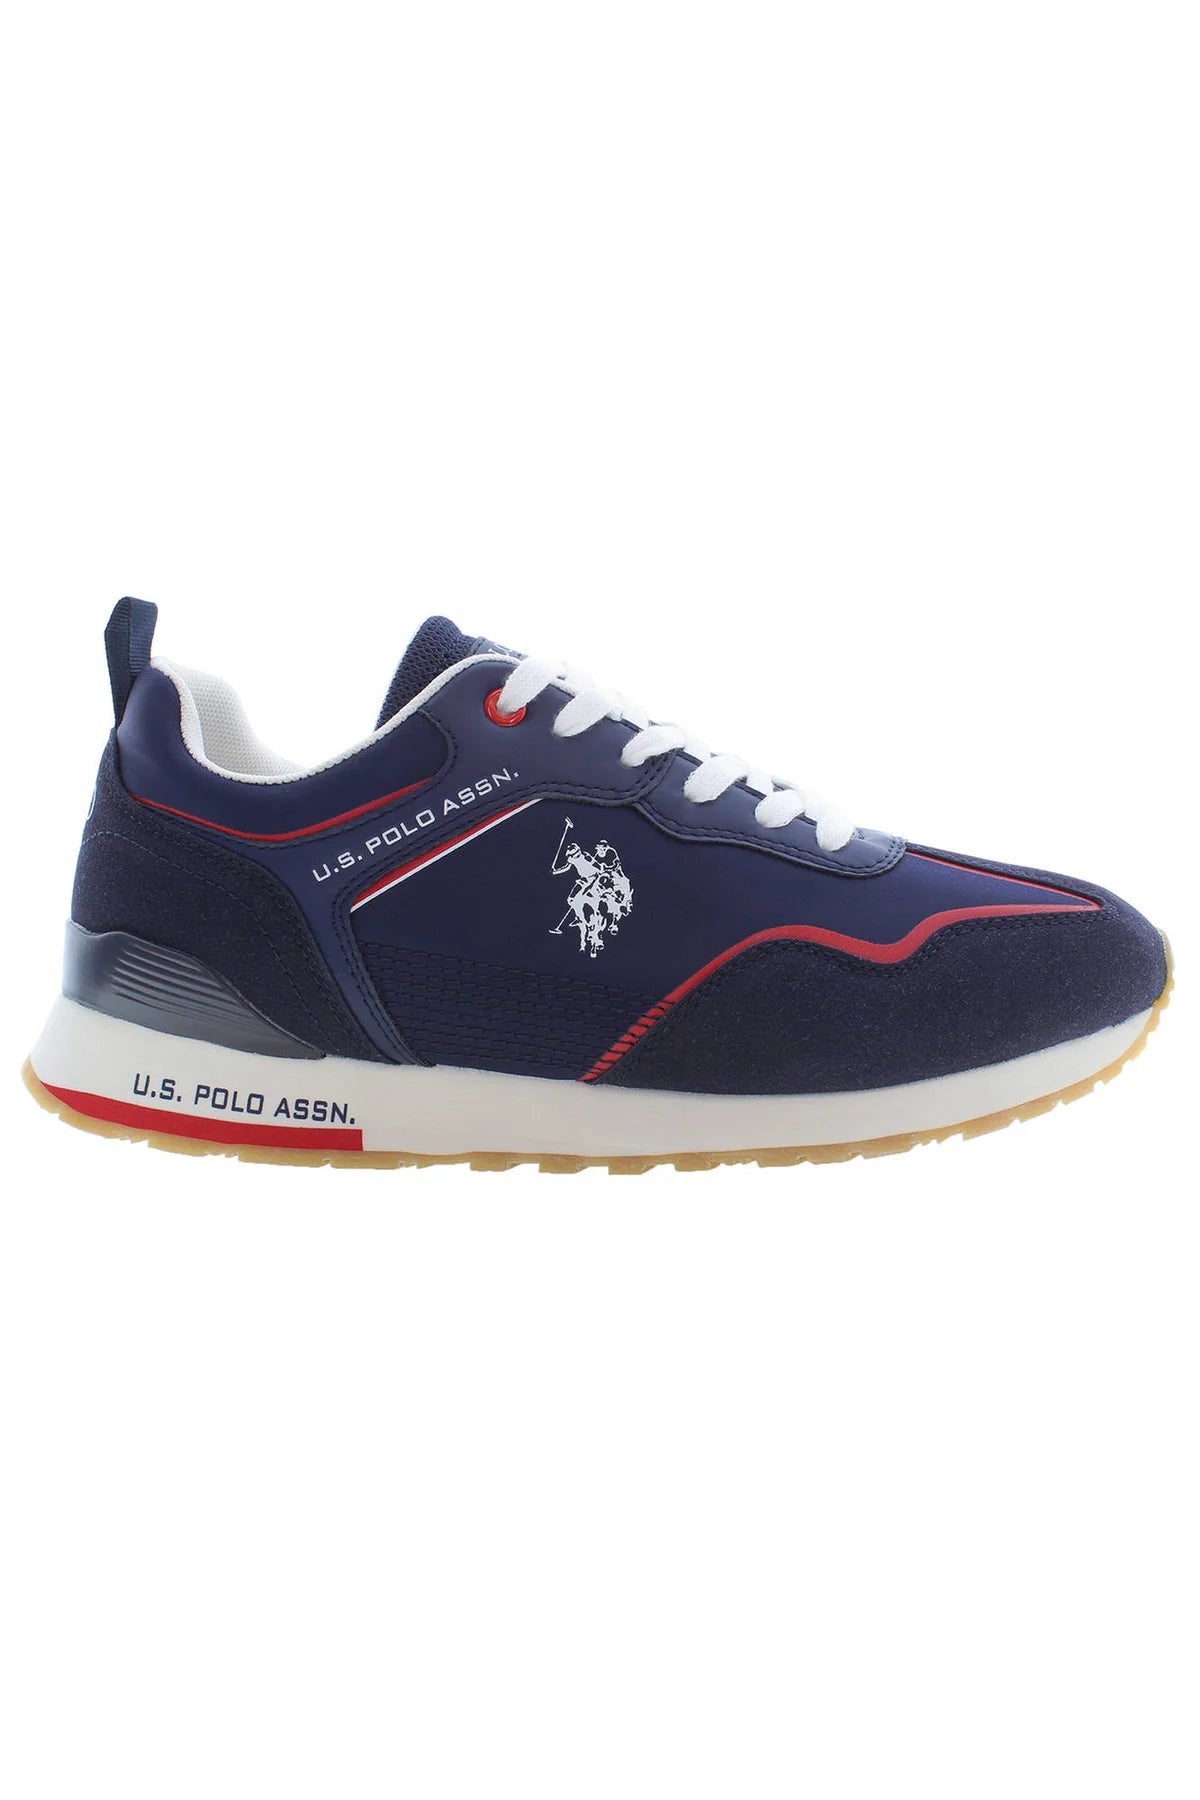 U.S. Polo Assn. Men’s Sneakers Polyester Navy #P335